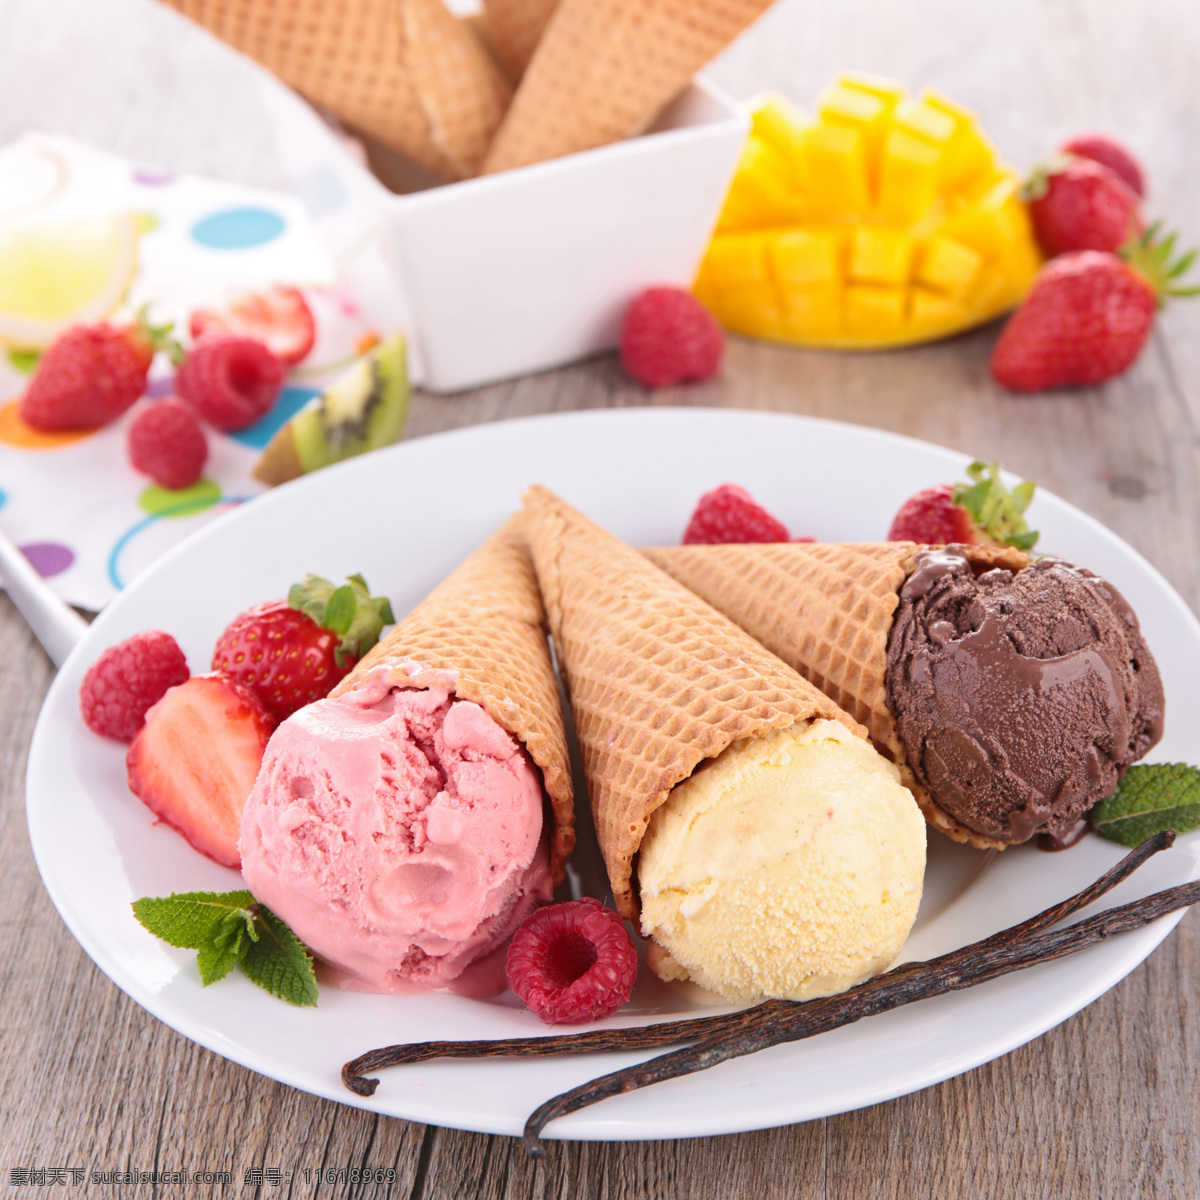 覆盆子 巧克力 冰淇淋 新鲜草莓 水果 七彩冰淇淋 美味冰淇淋 冰激淋 美味美食 夏季凉品 美食插图 其他类别 餐饮美食 白色